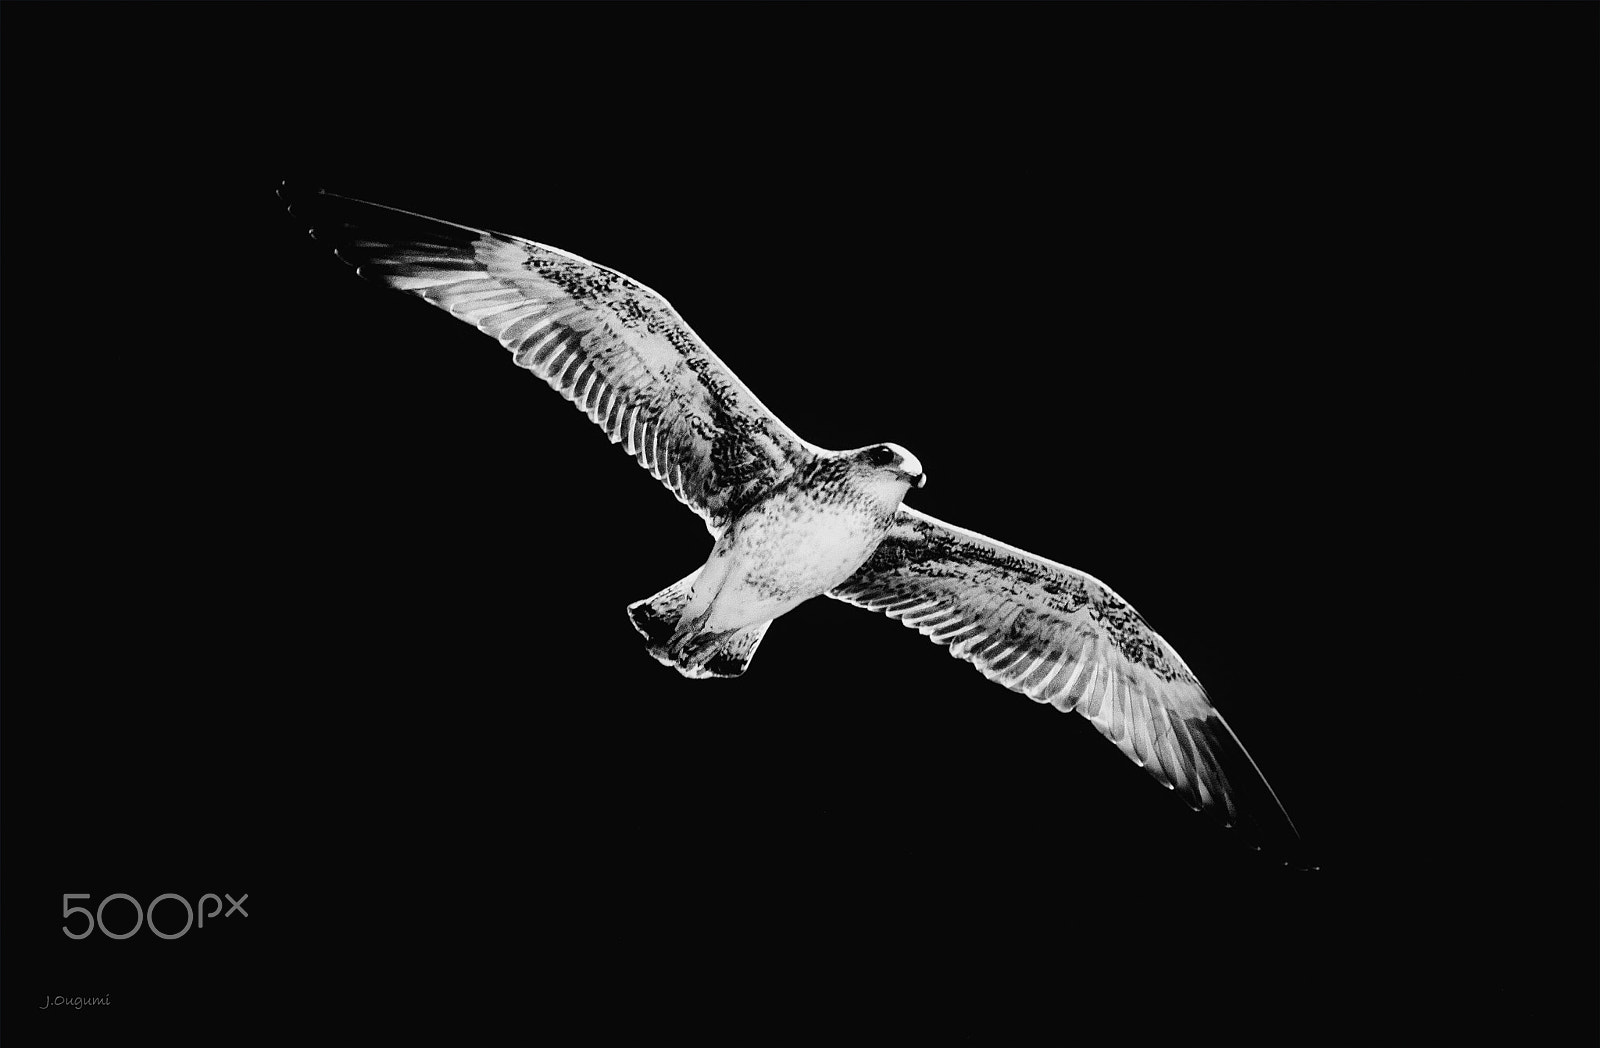 Canon EOS 5D sample photo. Flying bird photography